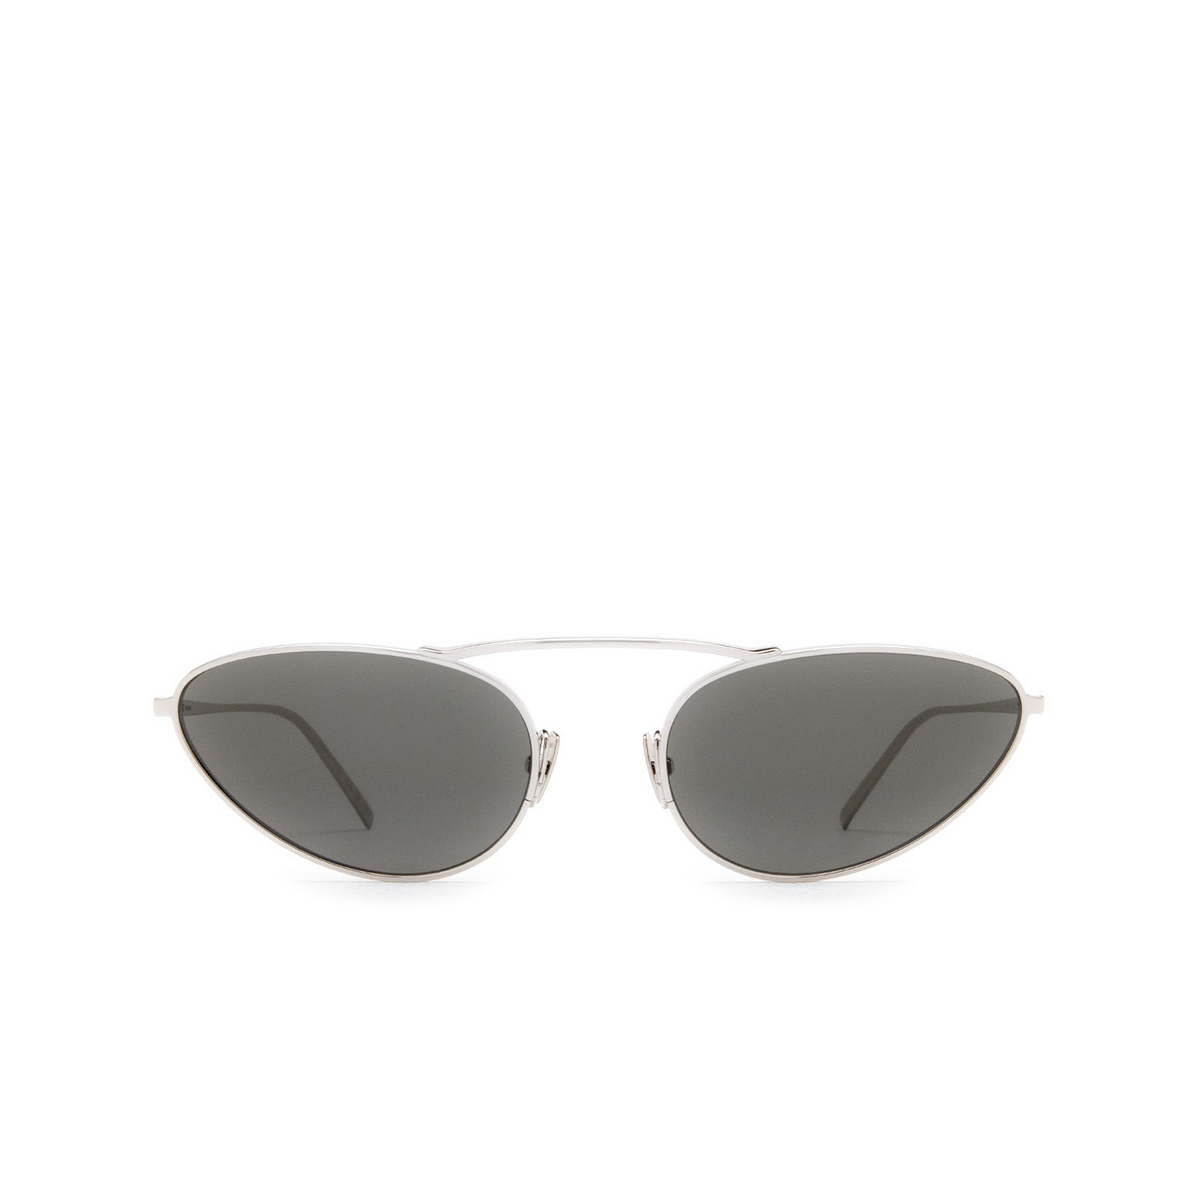 Saint Laurent® Oval Sunglasses: SL 538 color 002 Silver - front view